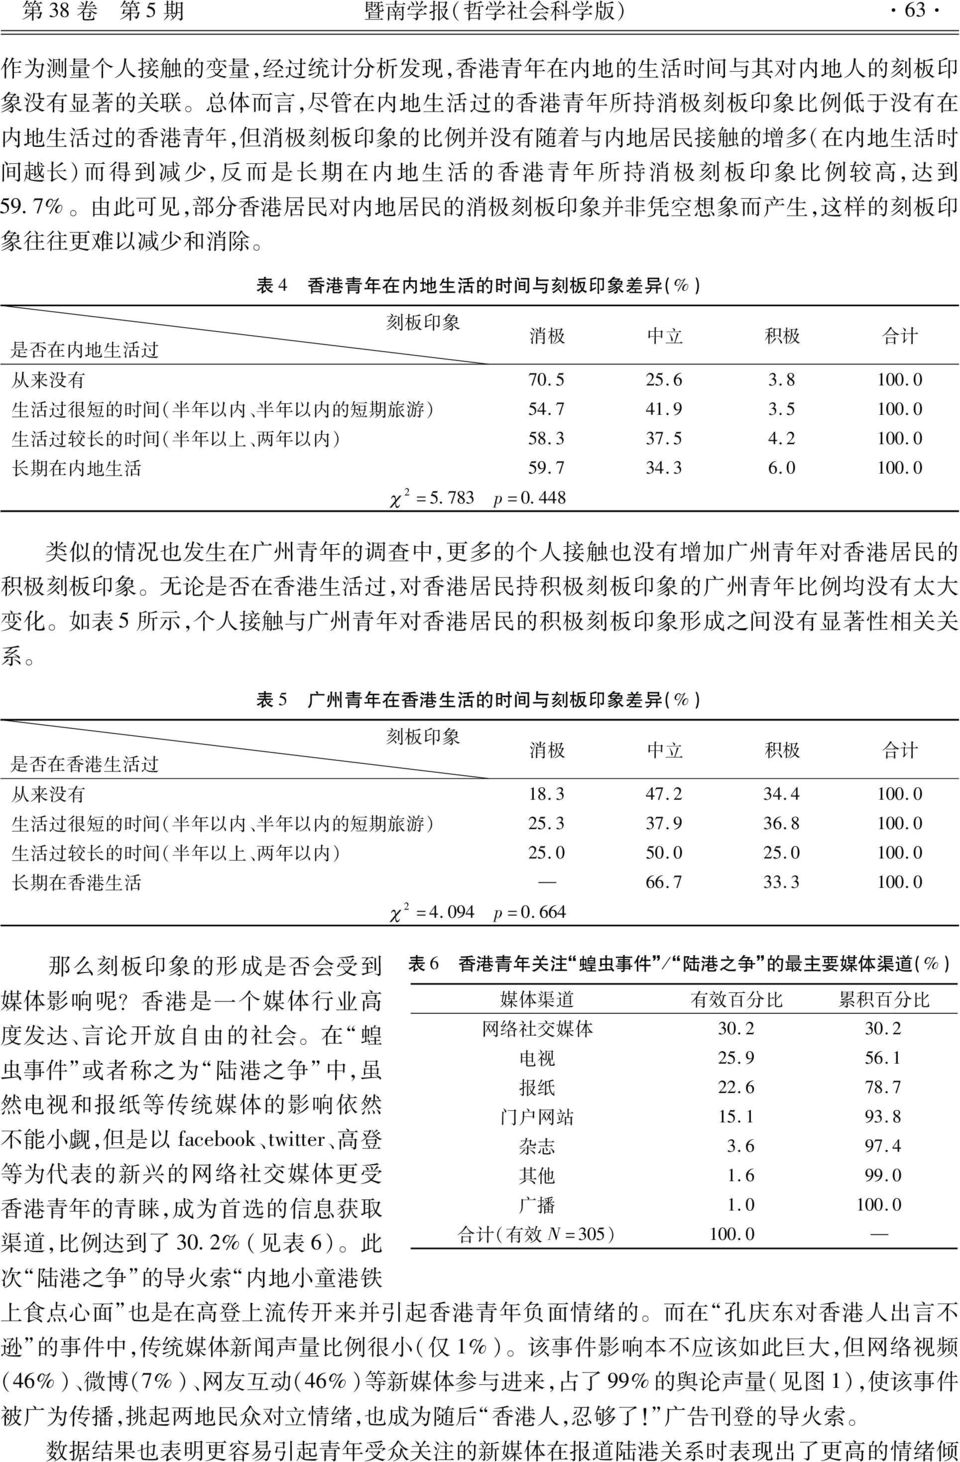 内 地 居 民 的 消 极 刻 板 印 象 并 非 凭 空 想 象 而 产 生, 这 样 的 刻 板 印 象 往 往 更 难 以 减 少 和 消 除 表 4 香 港 青 年 在 内 地 生 活 的 时 间 与 刻 板 印 象 差 异 (%) 刻 板 印 象 是 否 在 内 地 生 活 过 消 极 中 立 积 极 合 计 从 来 没 有 70.5 25.6 3.8 100.